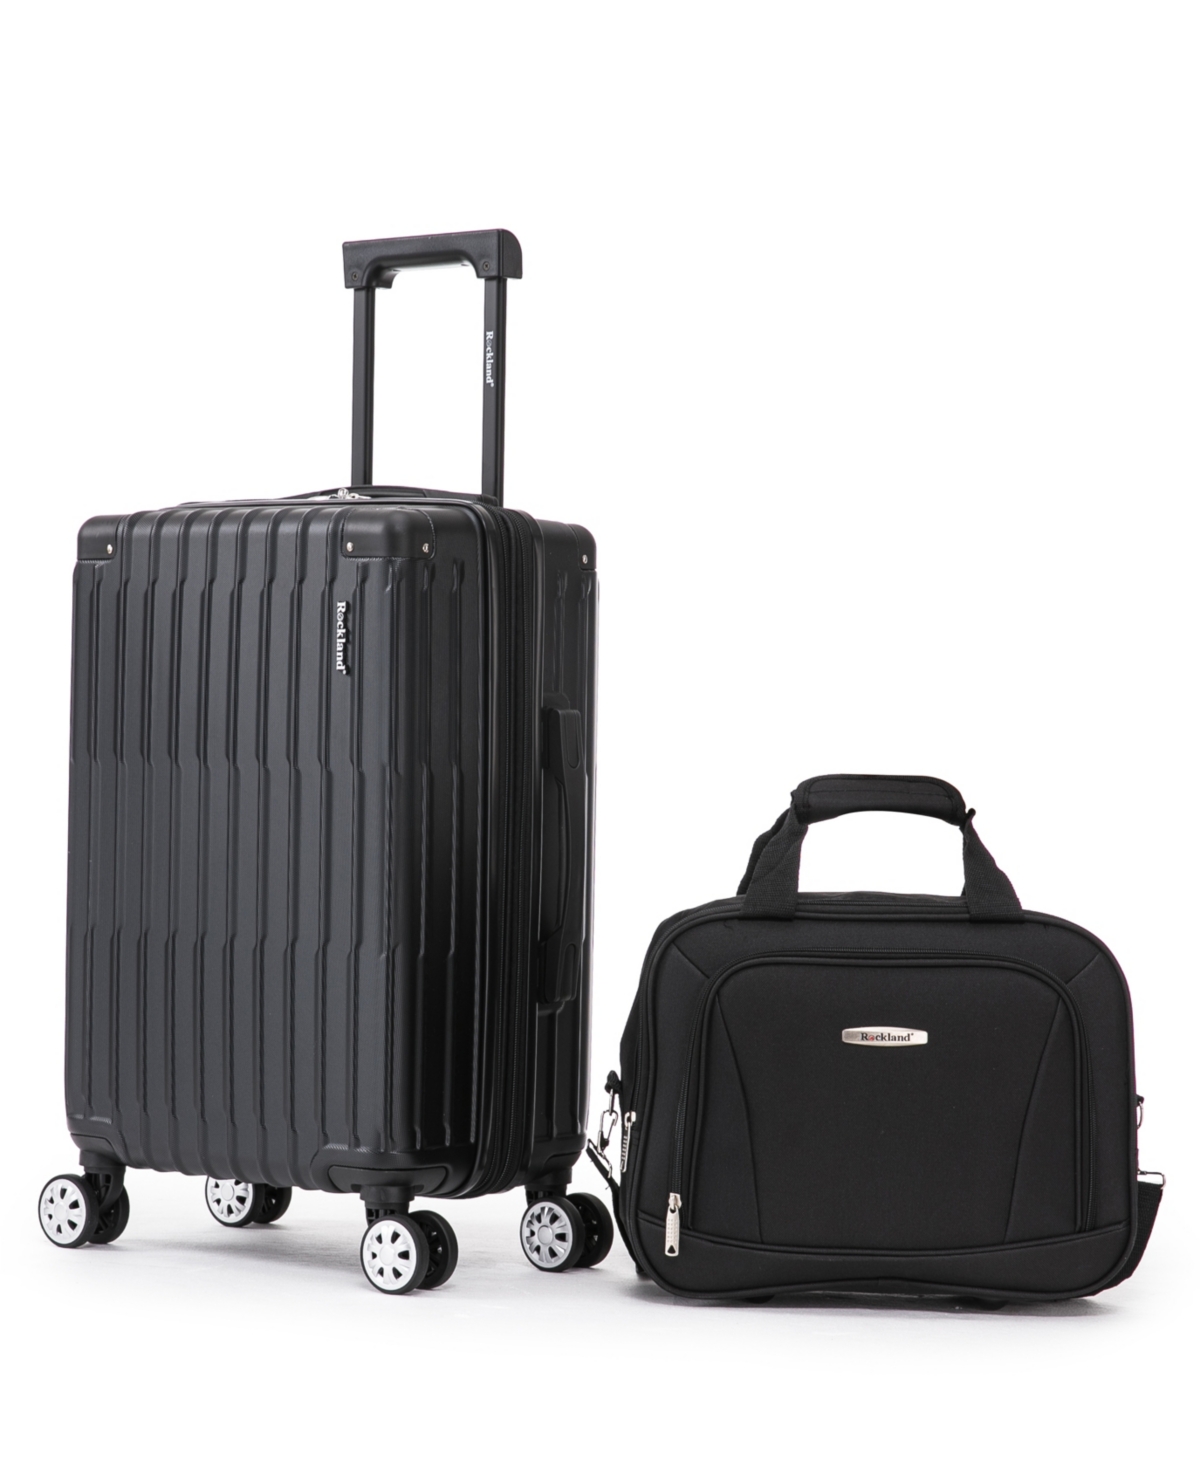 Rockland Napa Valley Luggage Set, 2 Piece In Black